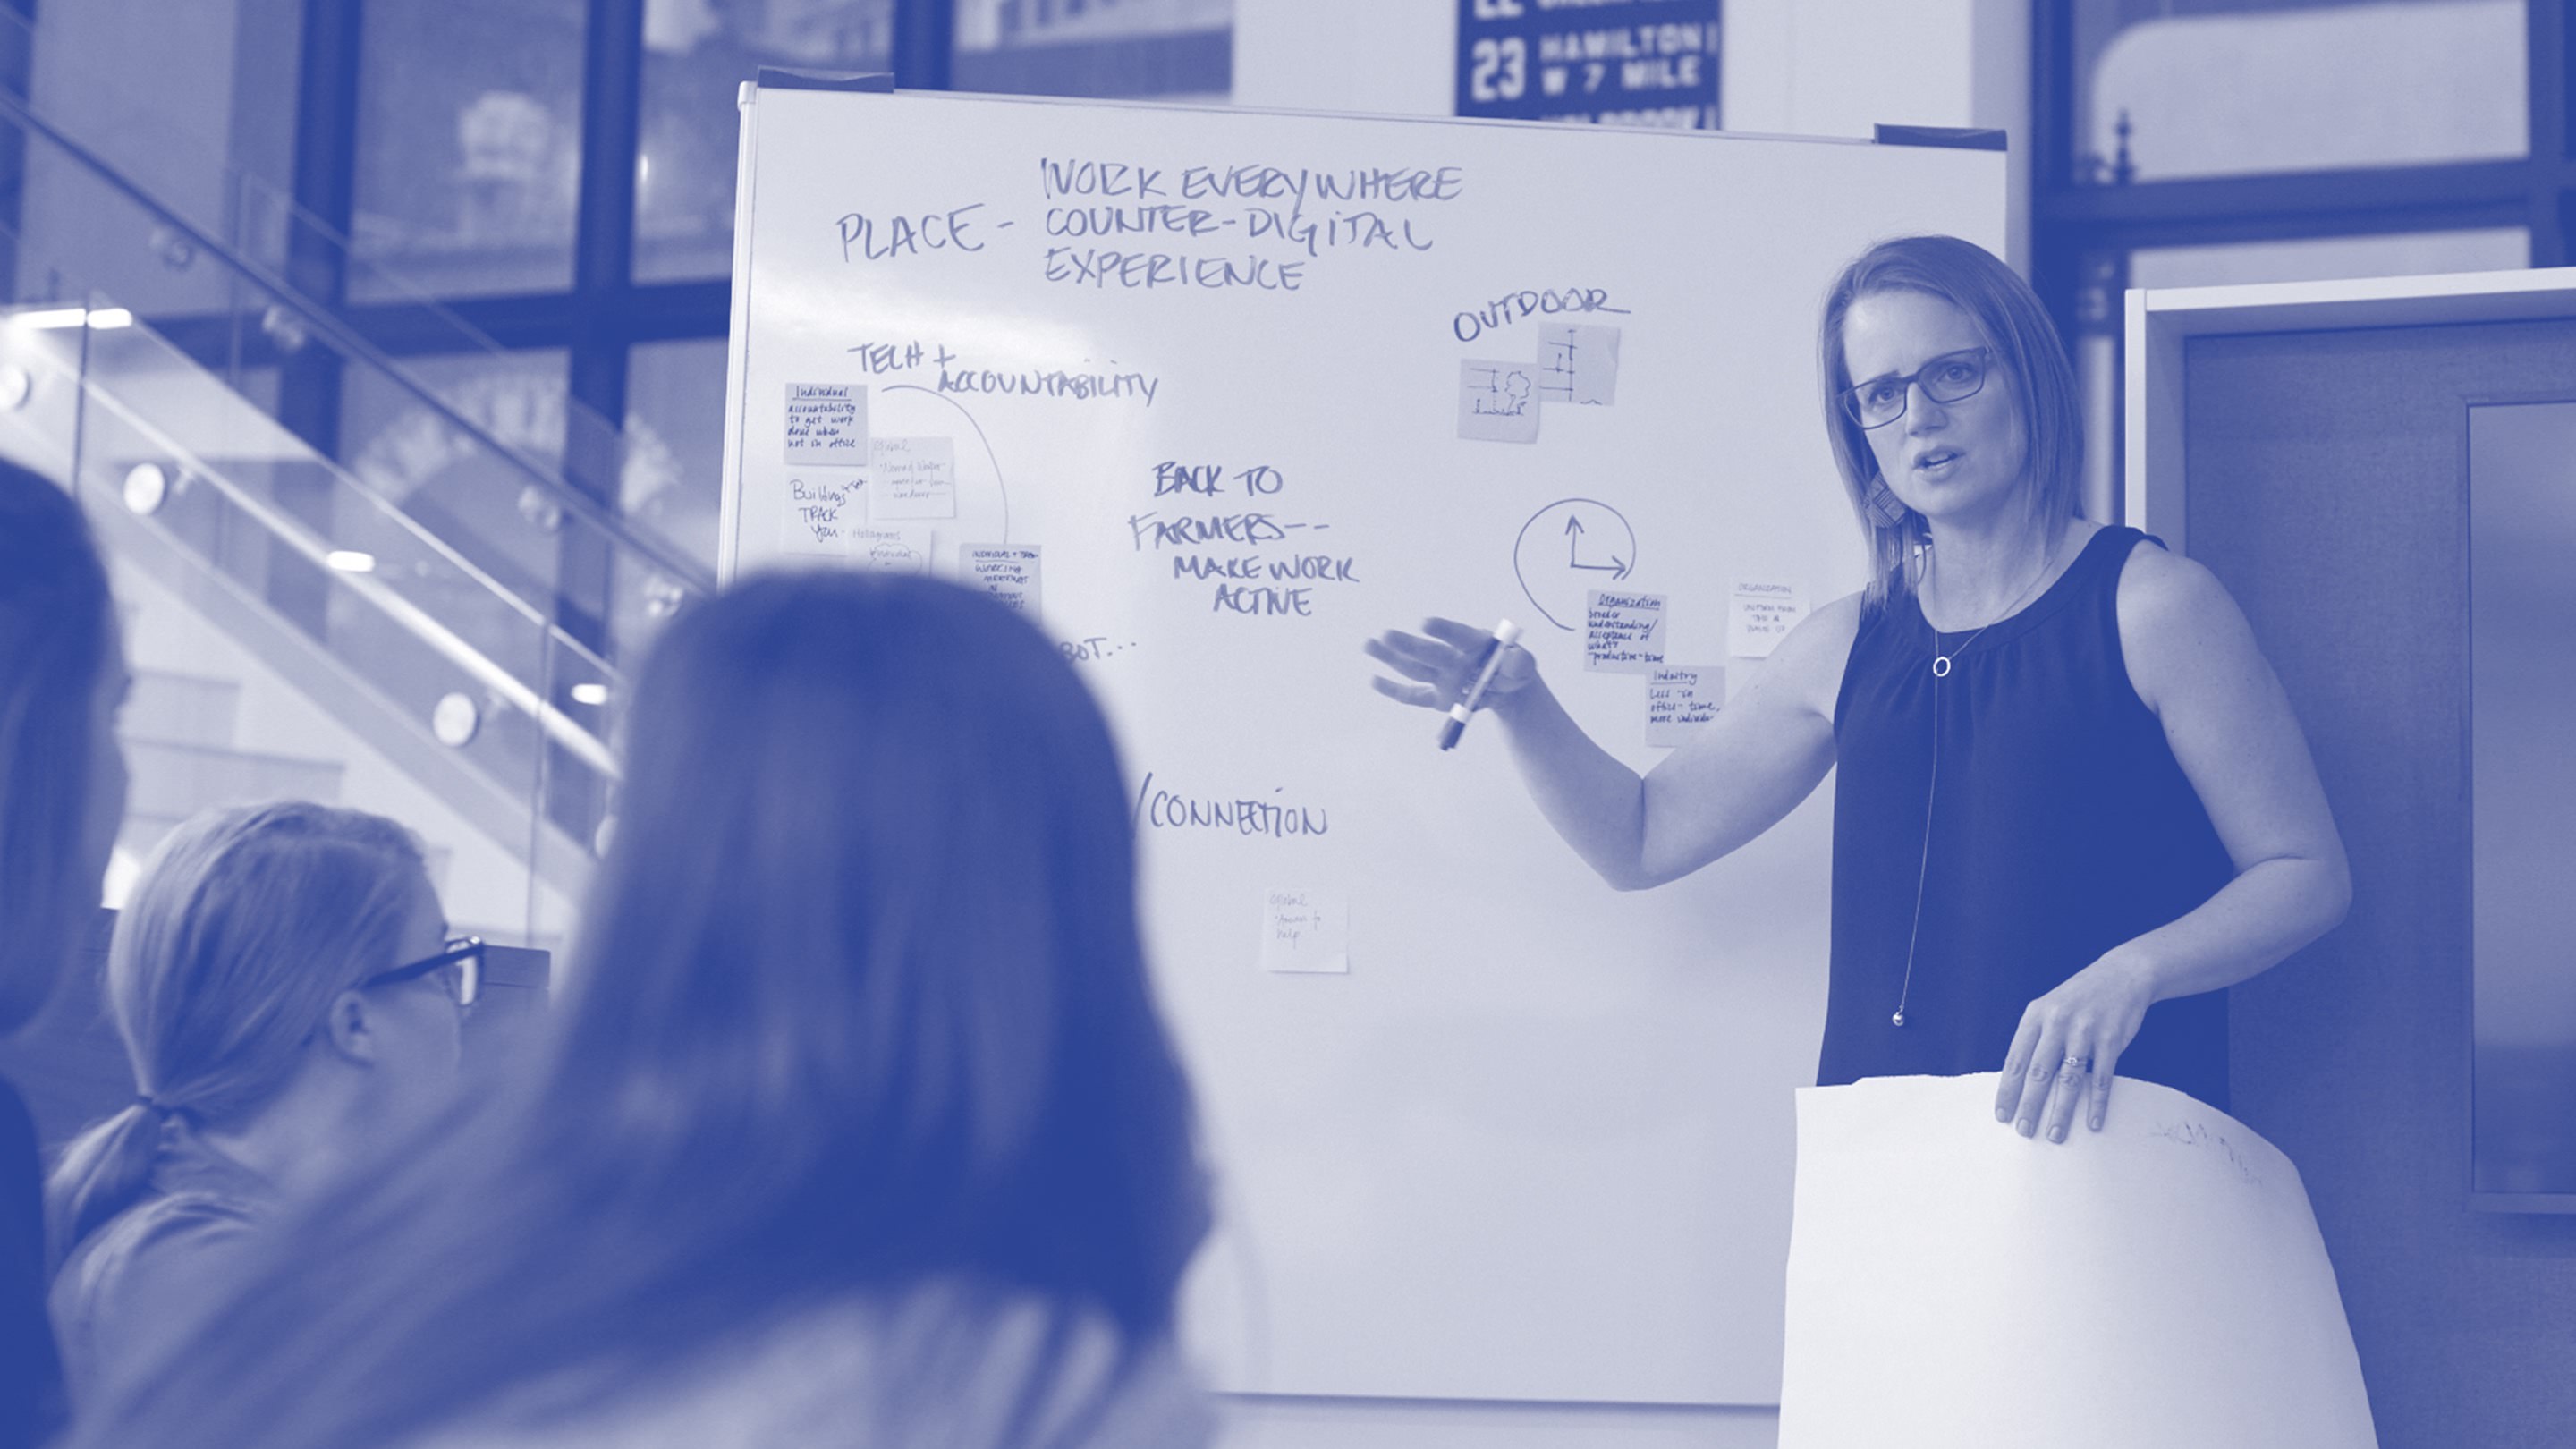 Een foto in blauwe wassing van een persoon die aan een schoolbord staat en een presentatie geeft aan een groepje ontwerpers